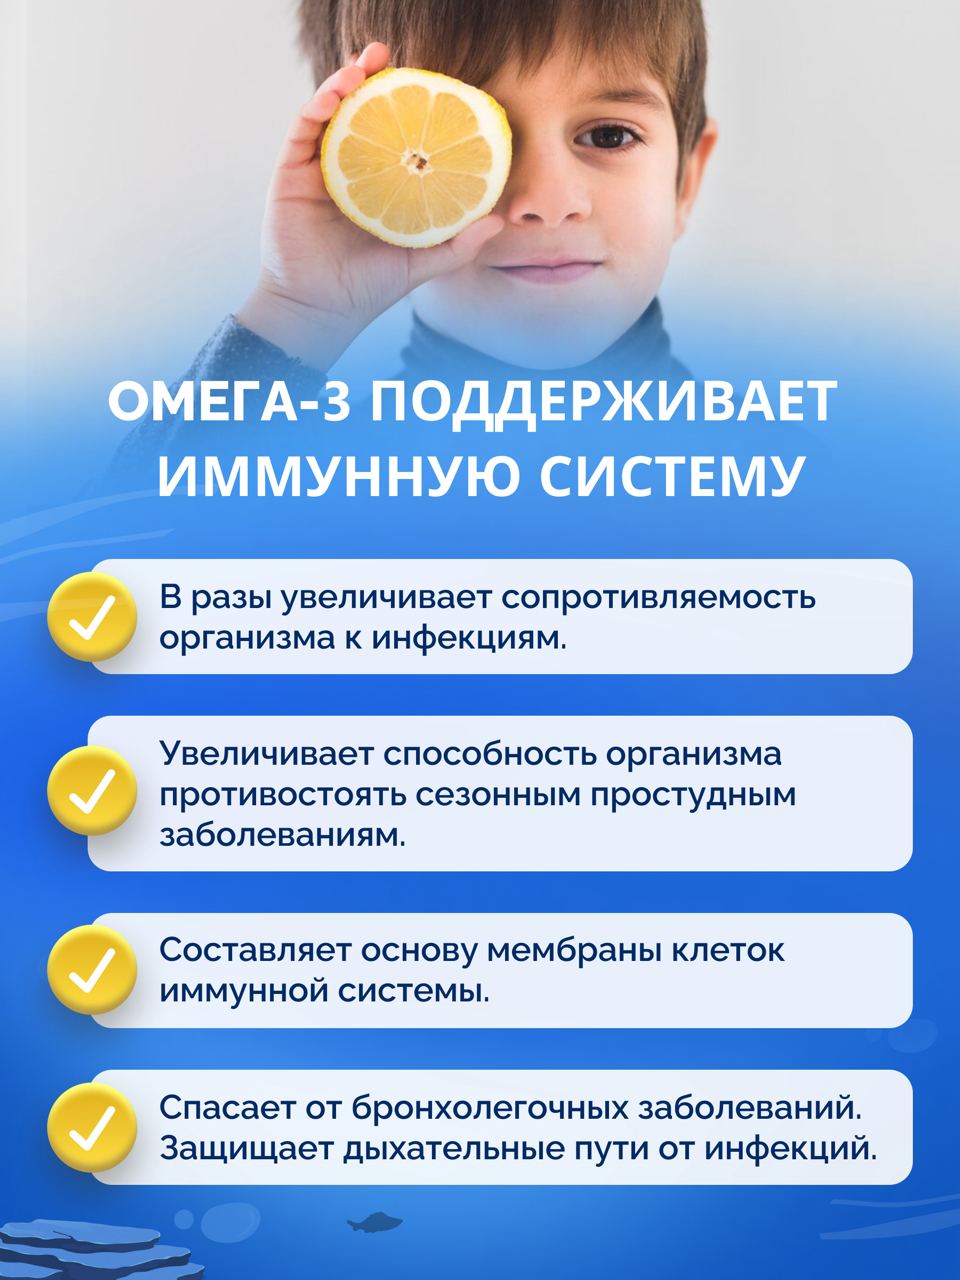 Омега-3 форте BIOTTE 790 mg fish oil премиум рыбий жир для детей подростков взрослых 90 капсул - фото 6